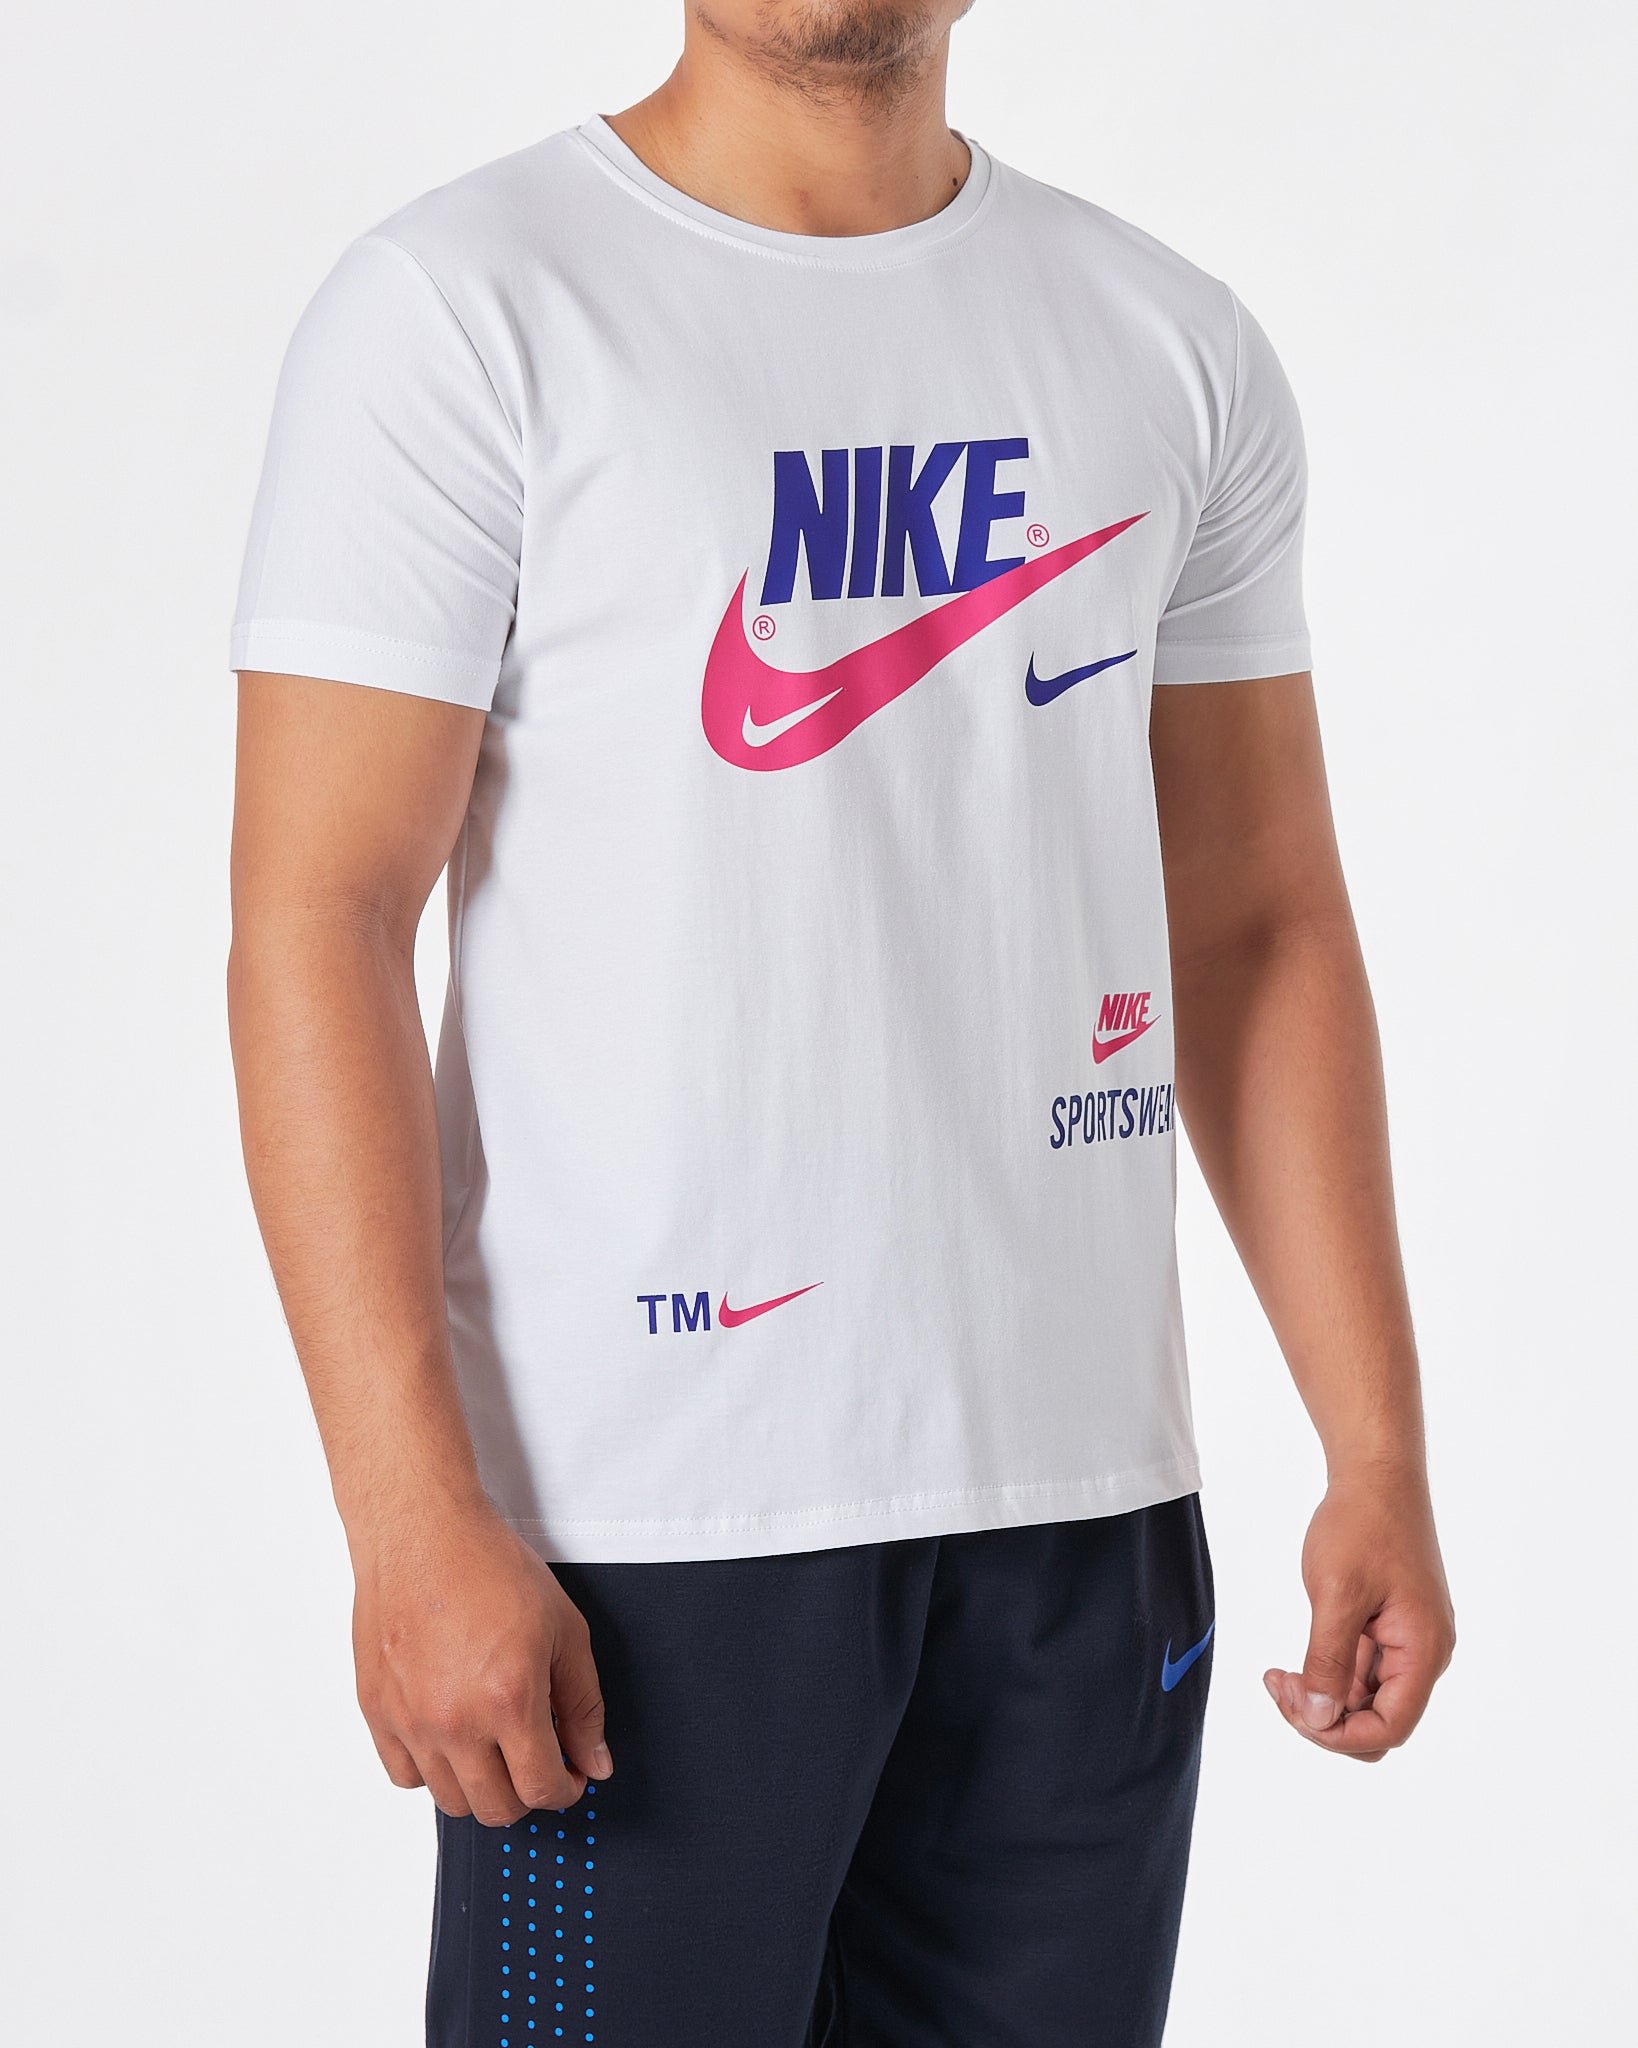 NIK Logo Printed Men White T-Shirt 15.90